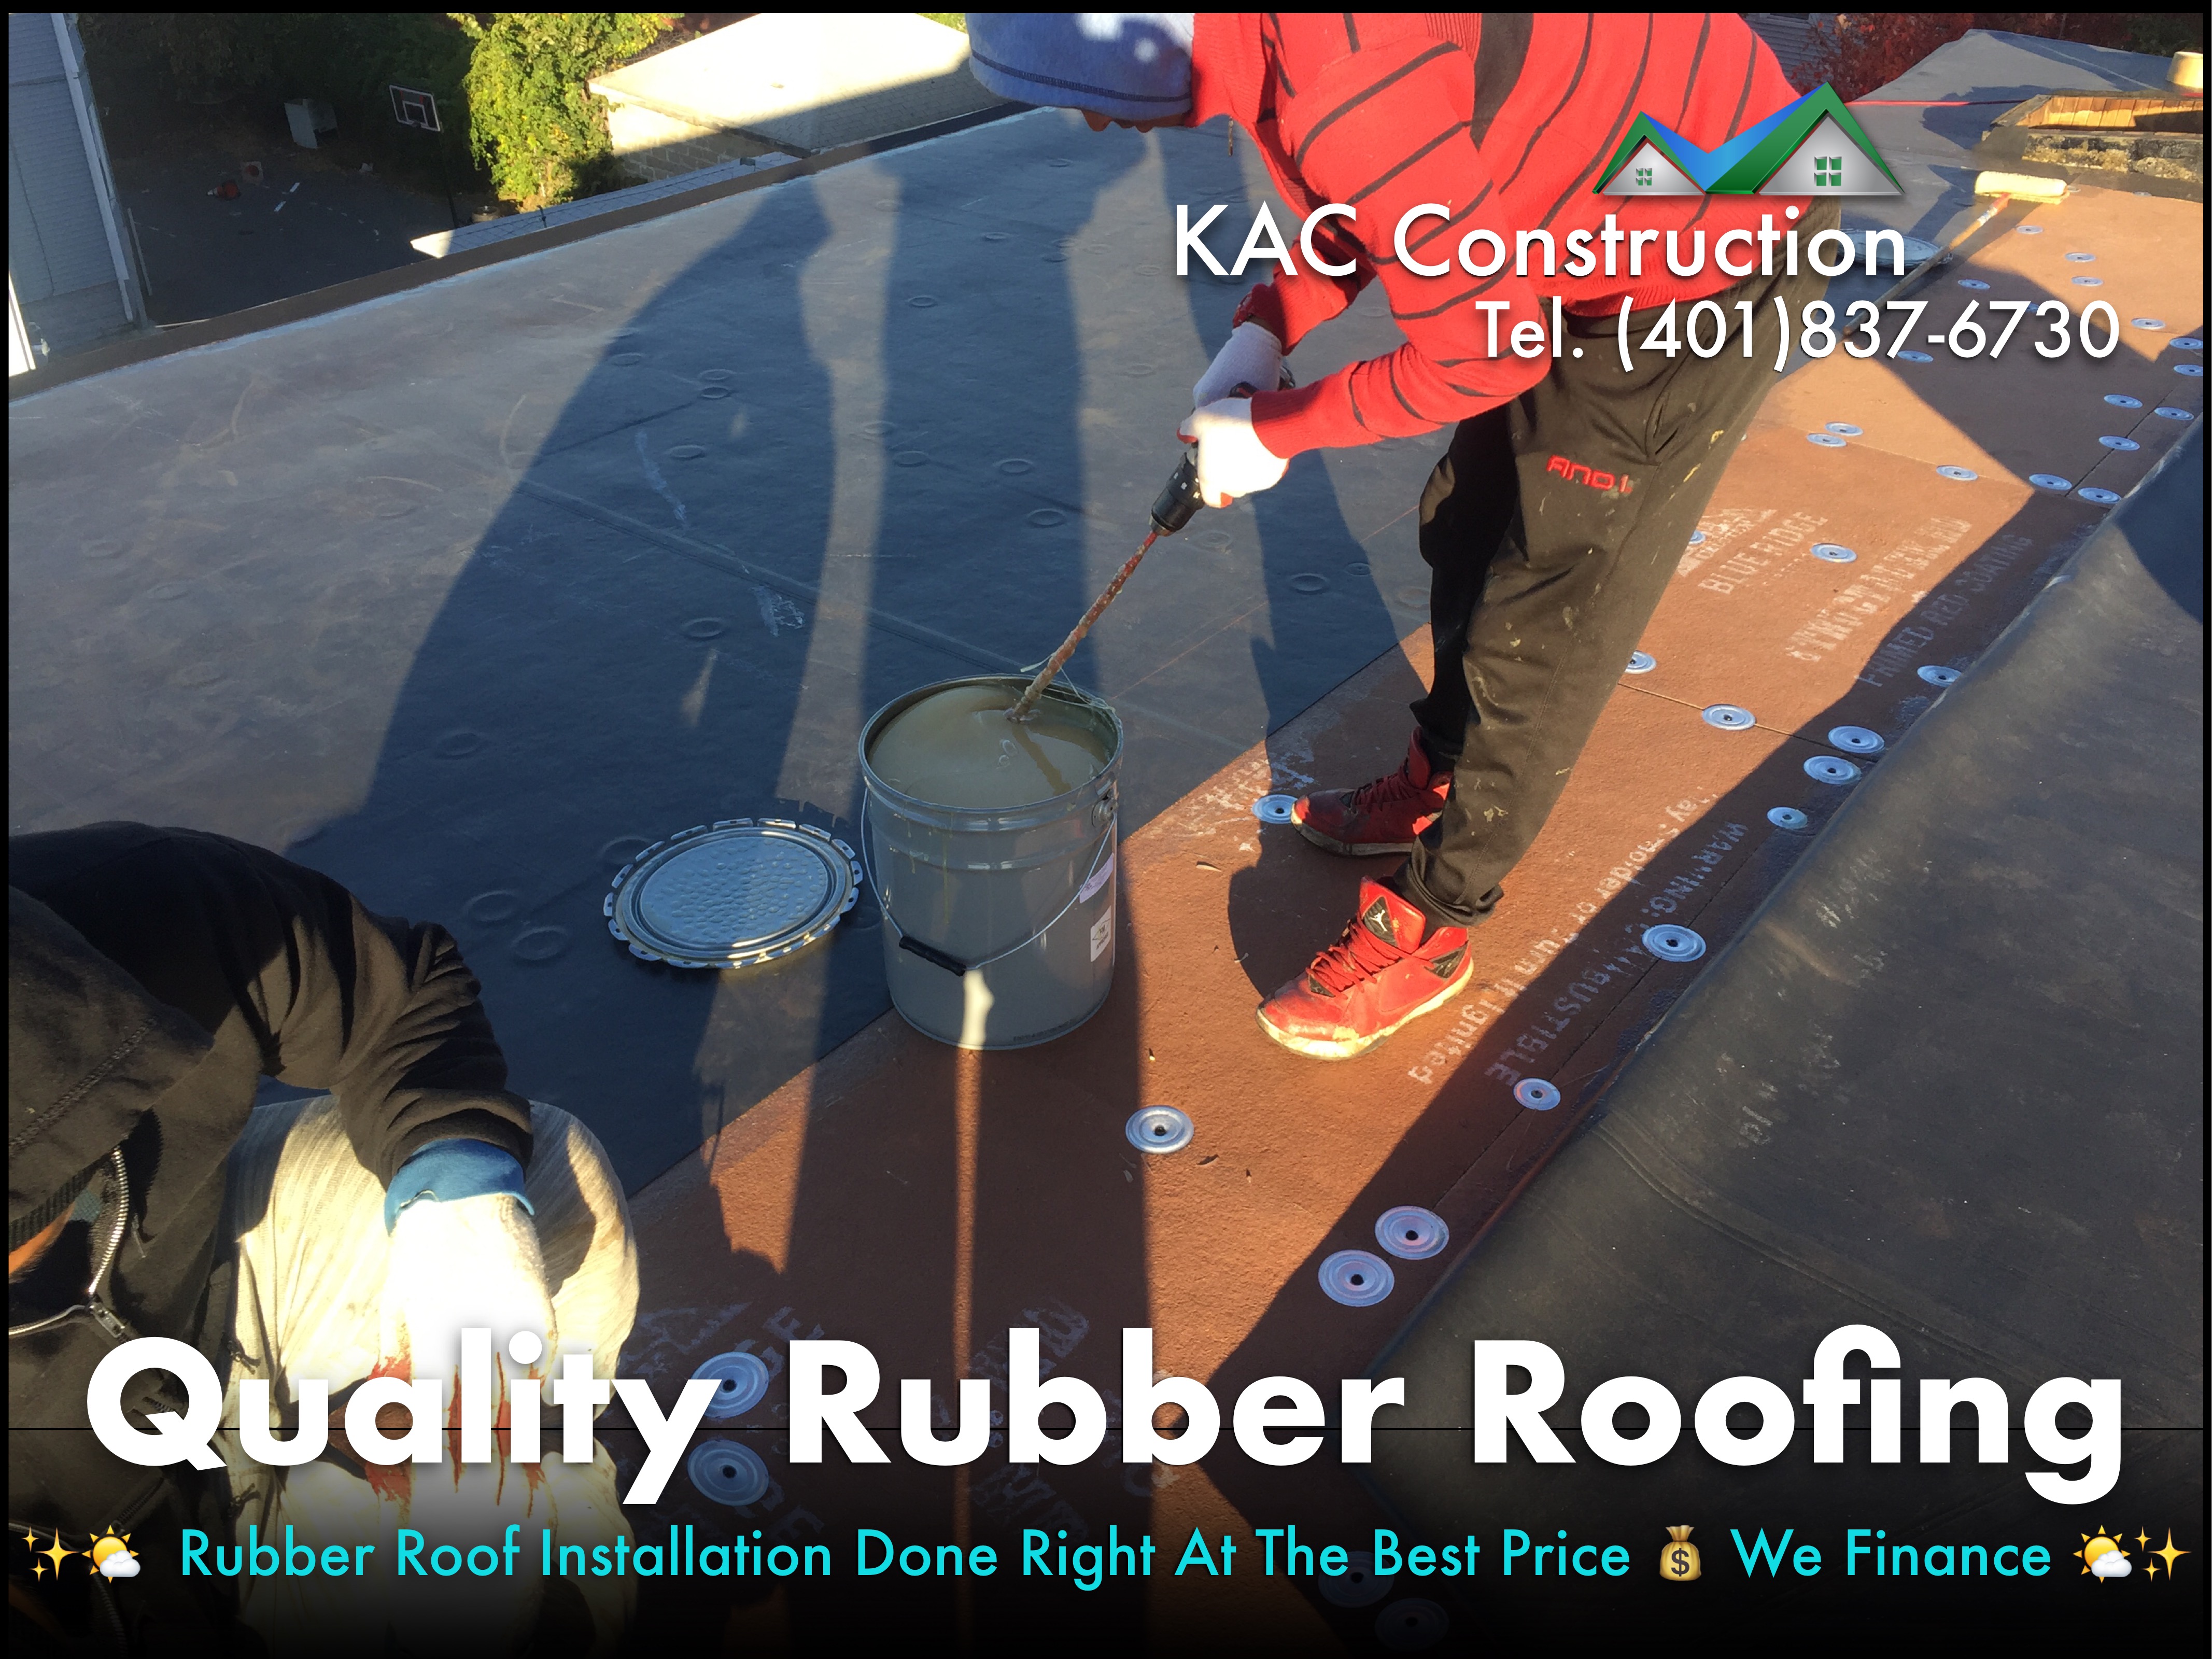 Rubber roof, rubber roof ri, rubber roof Installation, rubber roof Installation ri, rubber roof Installation in RI, rubber roof contractor ri, rubber roof repair ri,